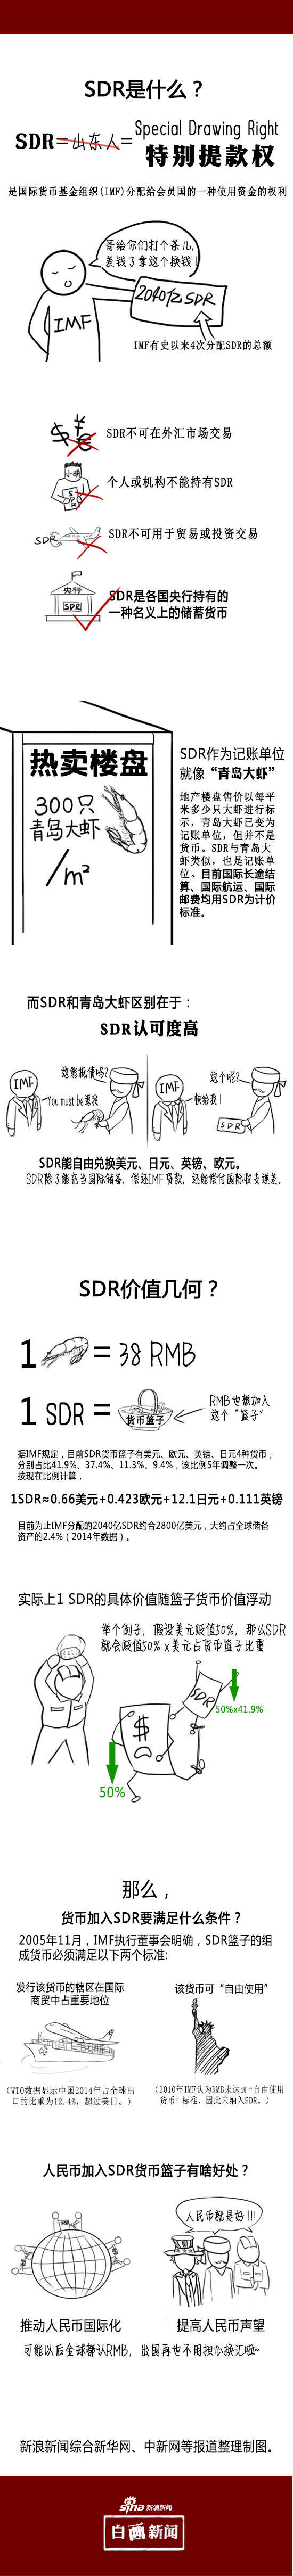 人民币正式纳入SDR